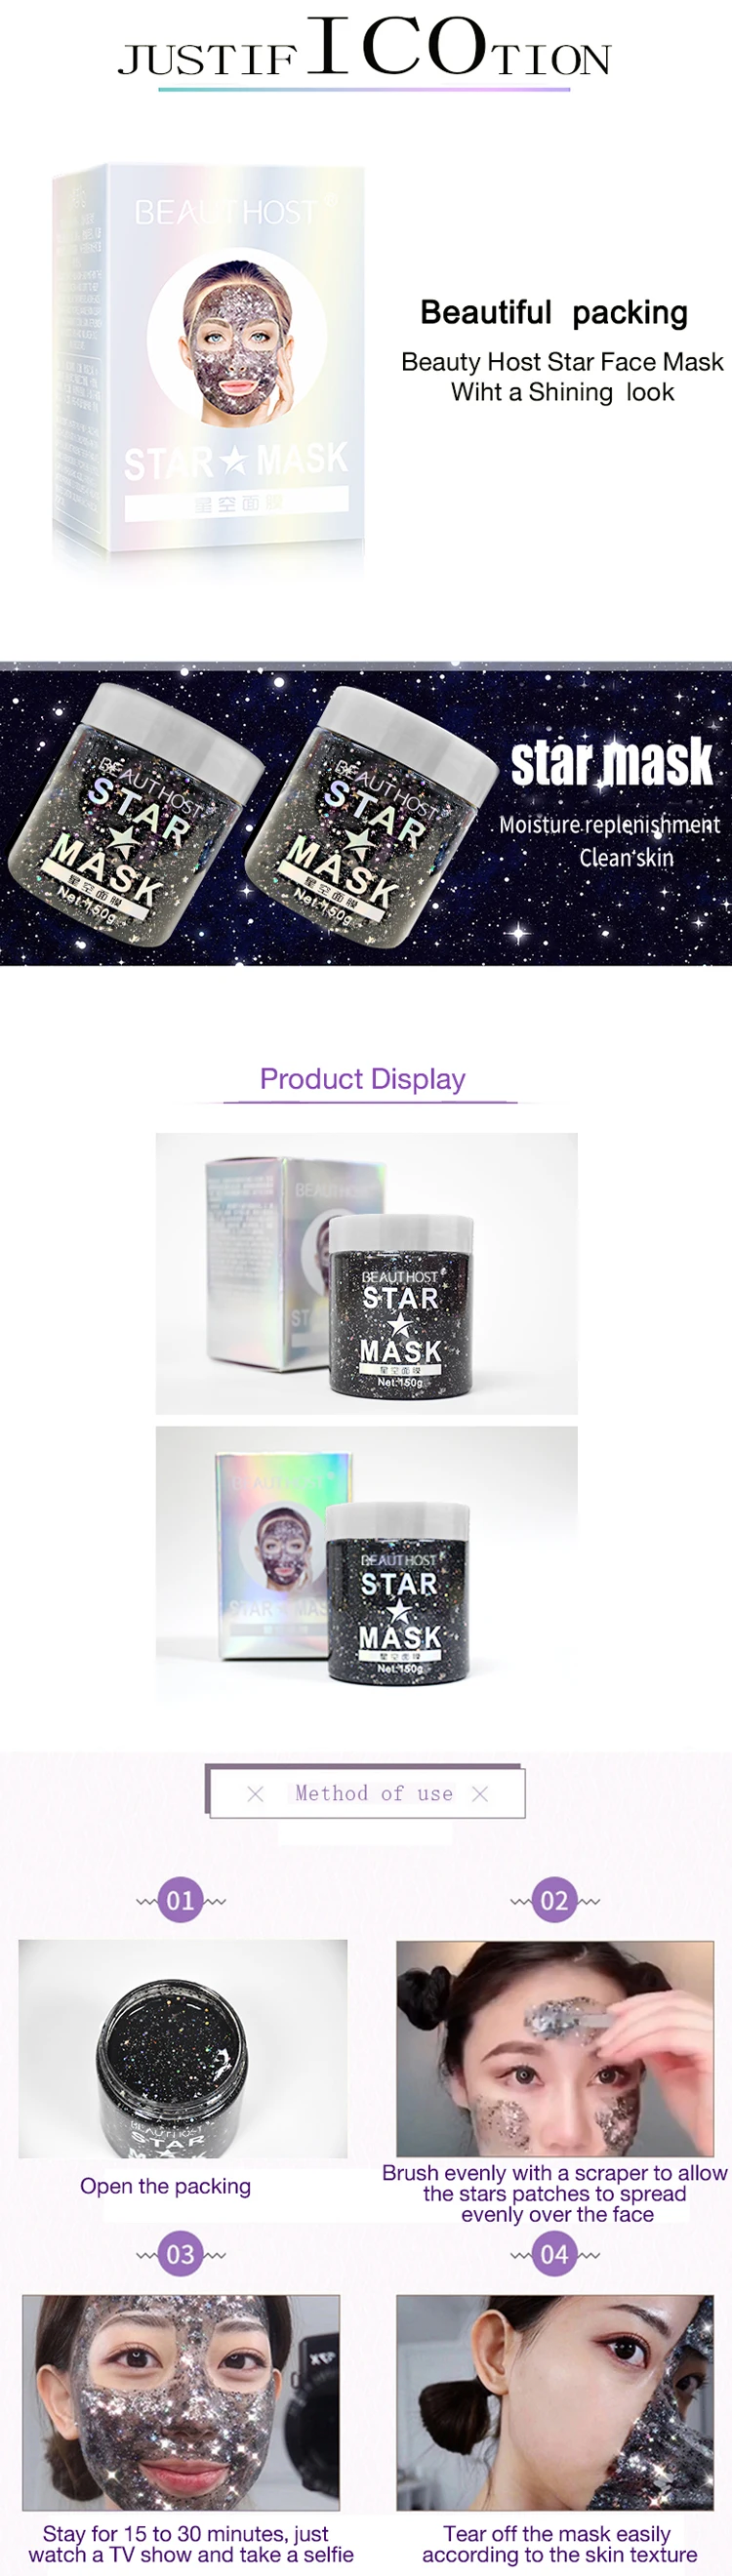 プライベートラベル韓国ピールオフリフトハイドレーティングスターグリッターマッドフェイスマスクスキンケア用 Buy スターマスク スターキラキラ顔マスク スター韓国マスク Product On Alibaba Com